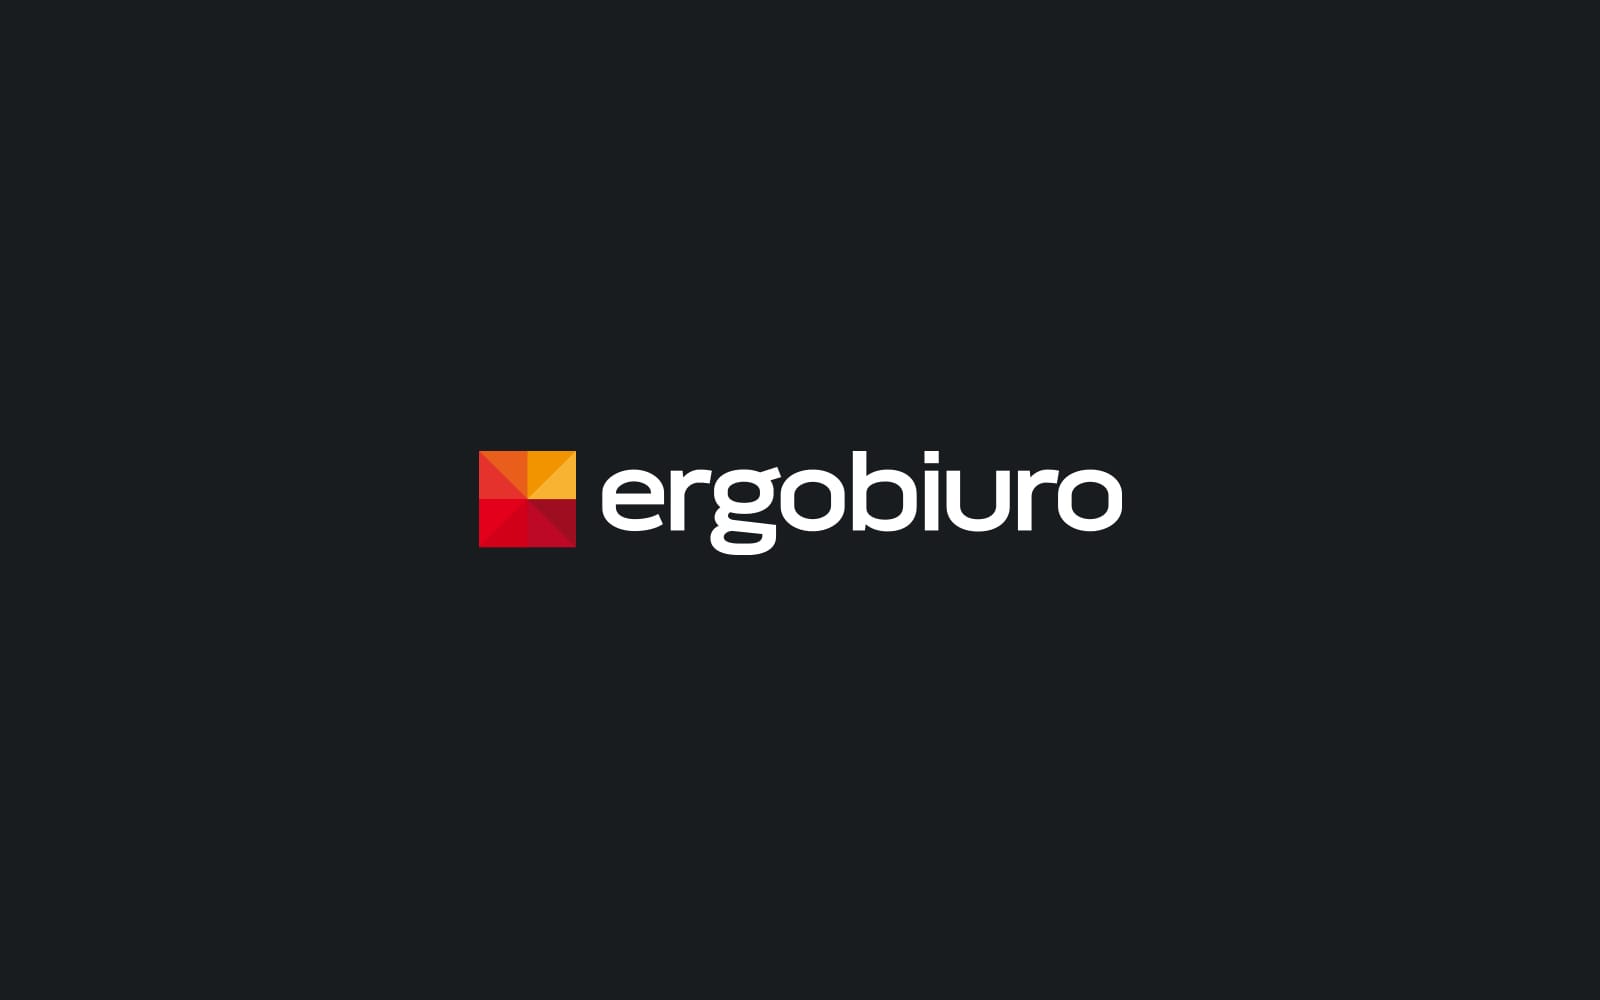 Ergobiuro logo firmowe projektowanie logo firmy znaków firmowych księgi znaku rewitalizacje rebranding logo Agencja brandingowa Moweli Creative